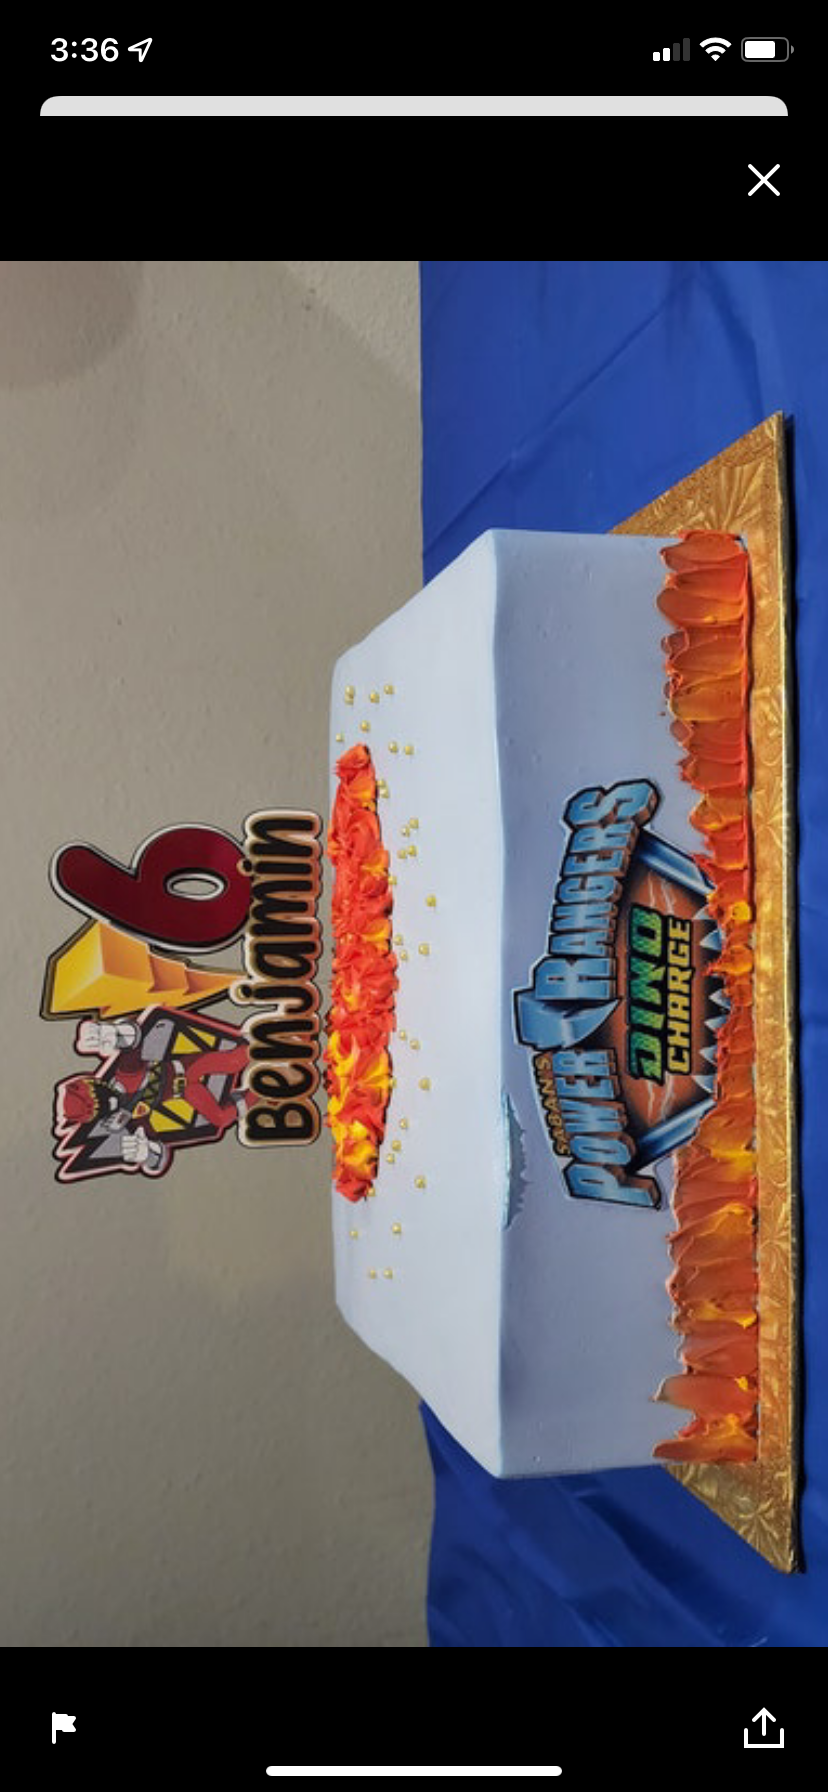 Power Rangers Inspired Cake Topper